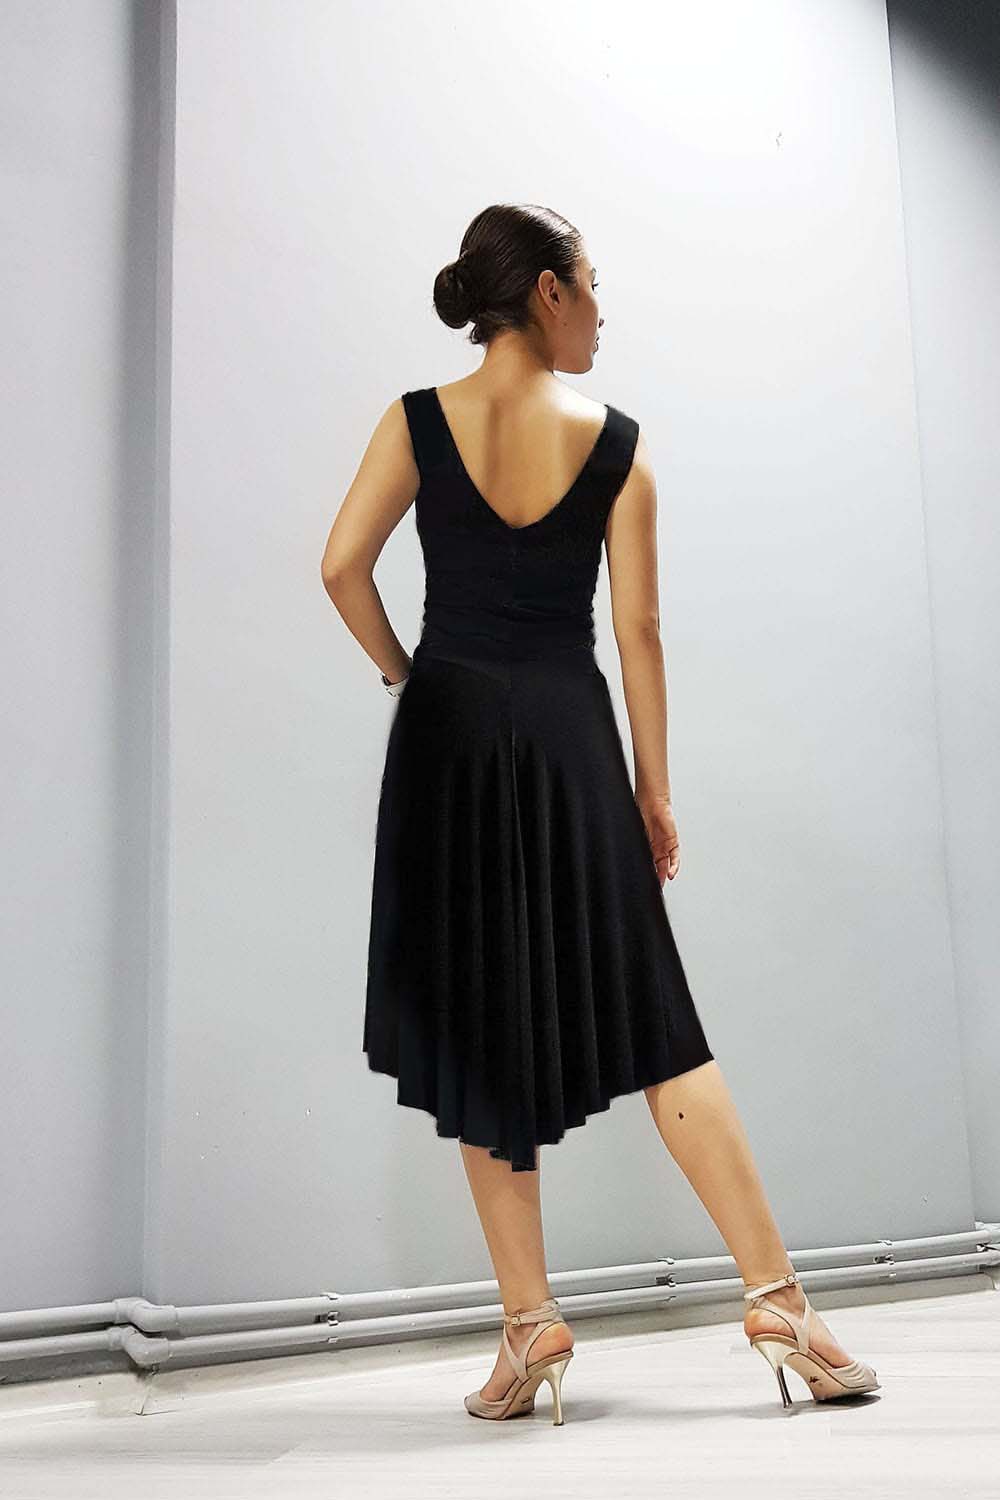 Buy Black and Royal Blue Skirt/ Reversable Tango Skirt / Pencil Skirt /  Draped Argentine Tango Skirt Online in India - Etsy